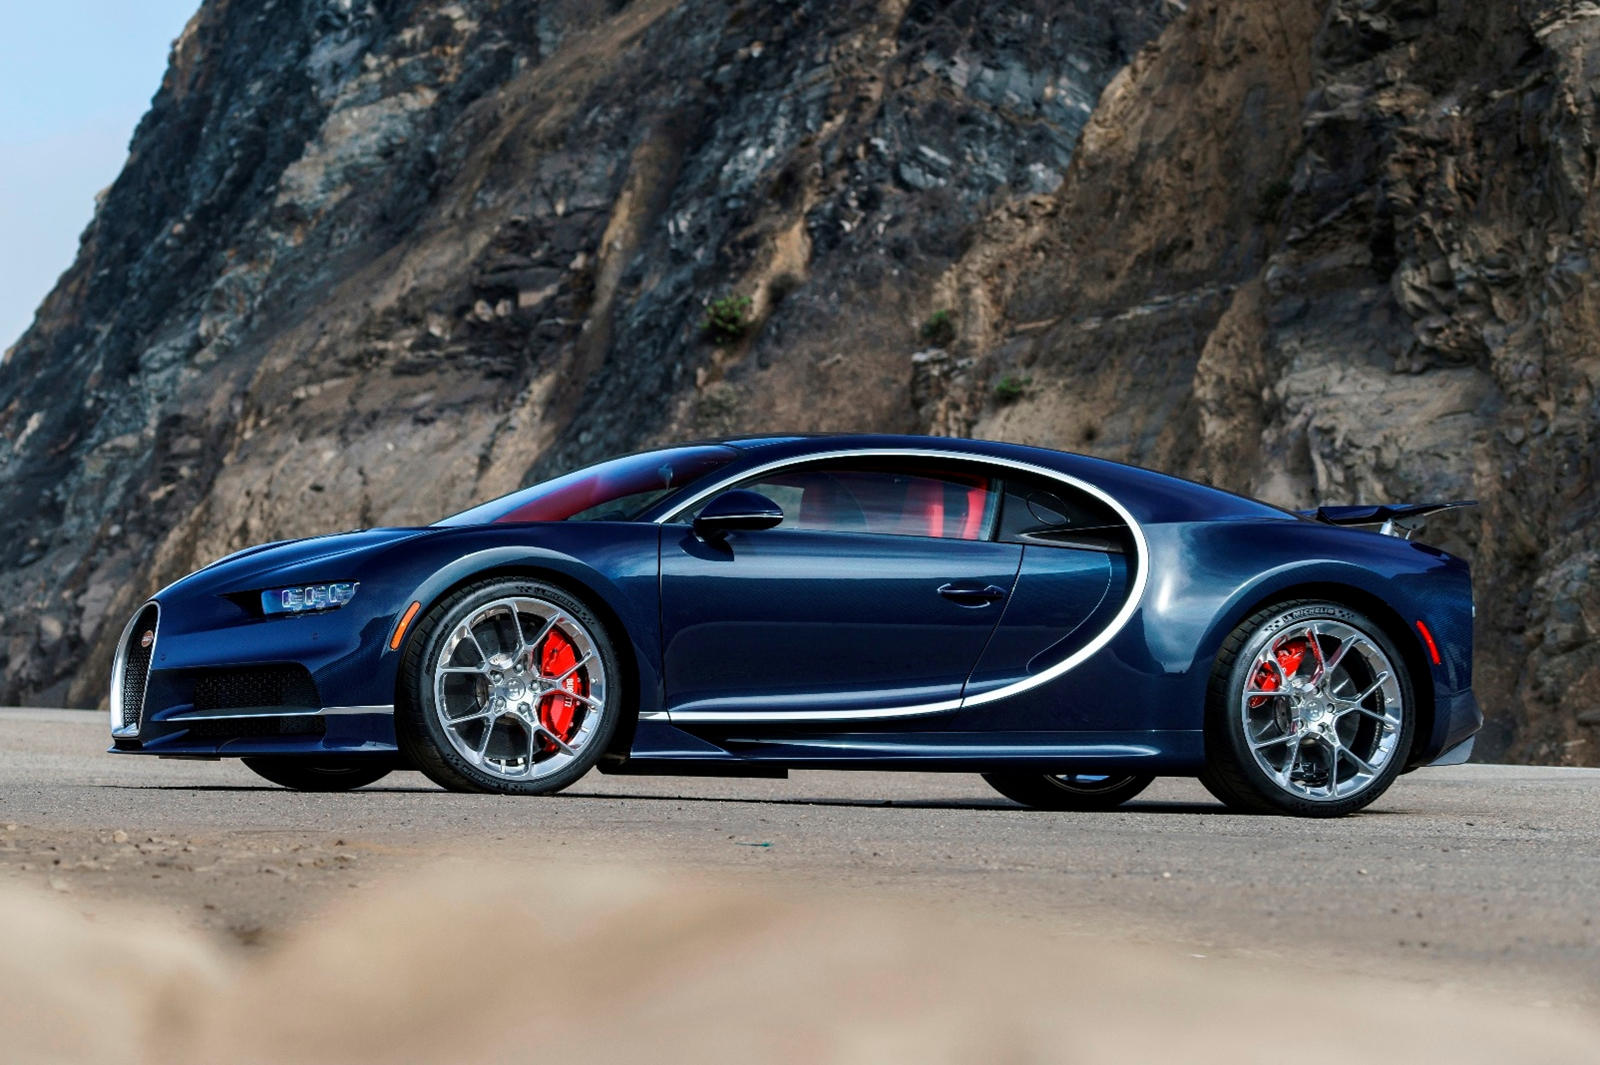 Что ж, Bugatti Super Sport 300+ выполнен в матовом черном цвете, а матовая отделка, похоже, является текущей тенденцией при создании специальных версий существующих продуктов (например, BMW M5 CS).